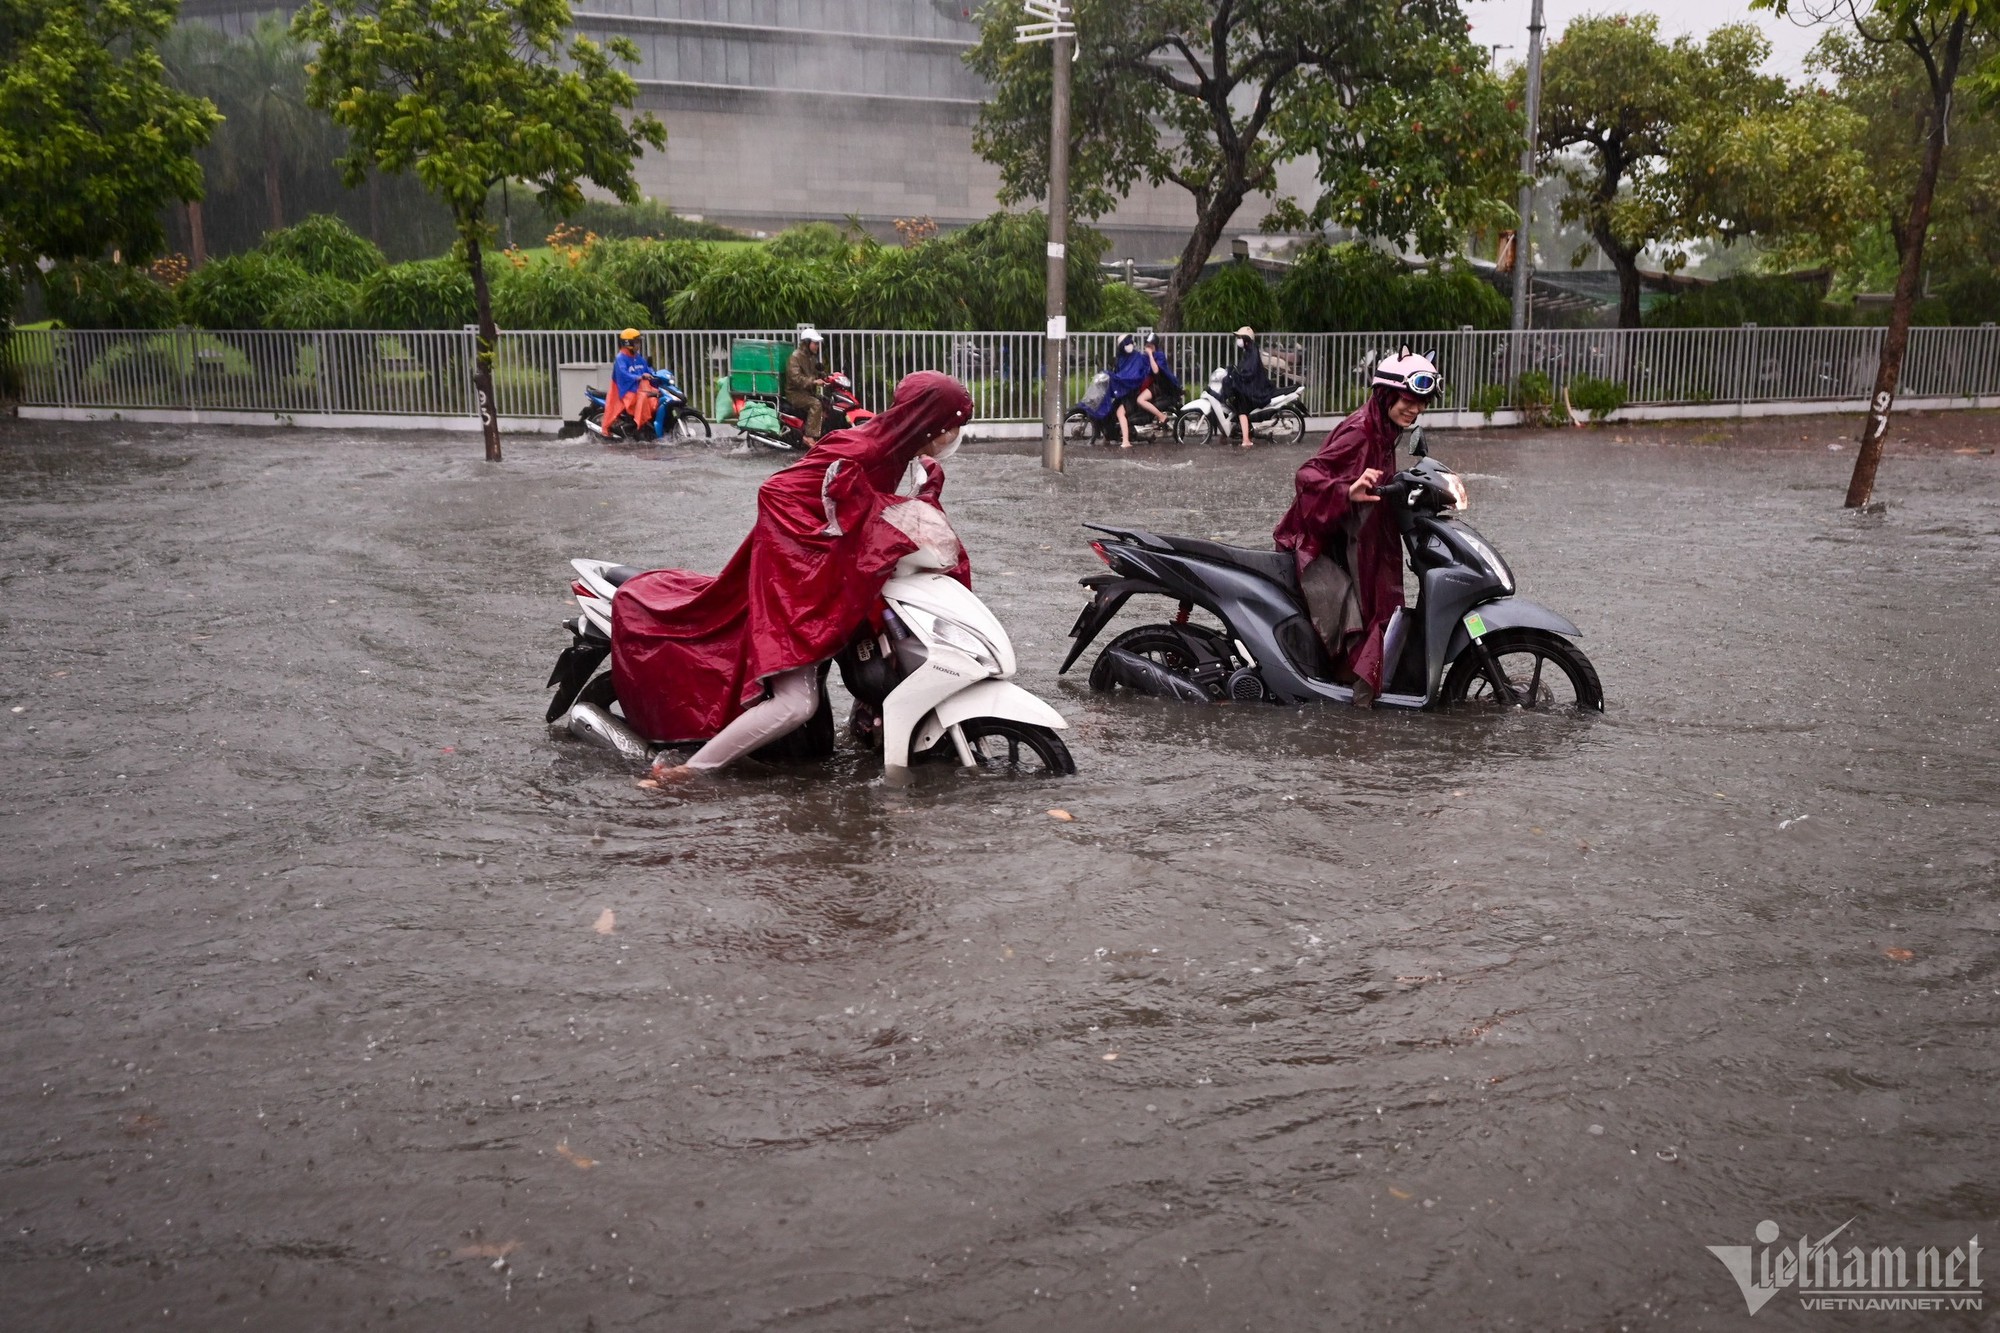 Hà Nội mưa lớn, người đi xe máy chới với giữa dòng nước ngập - Ảnh 5.